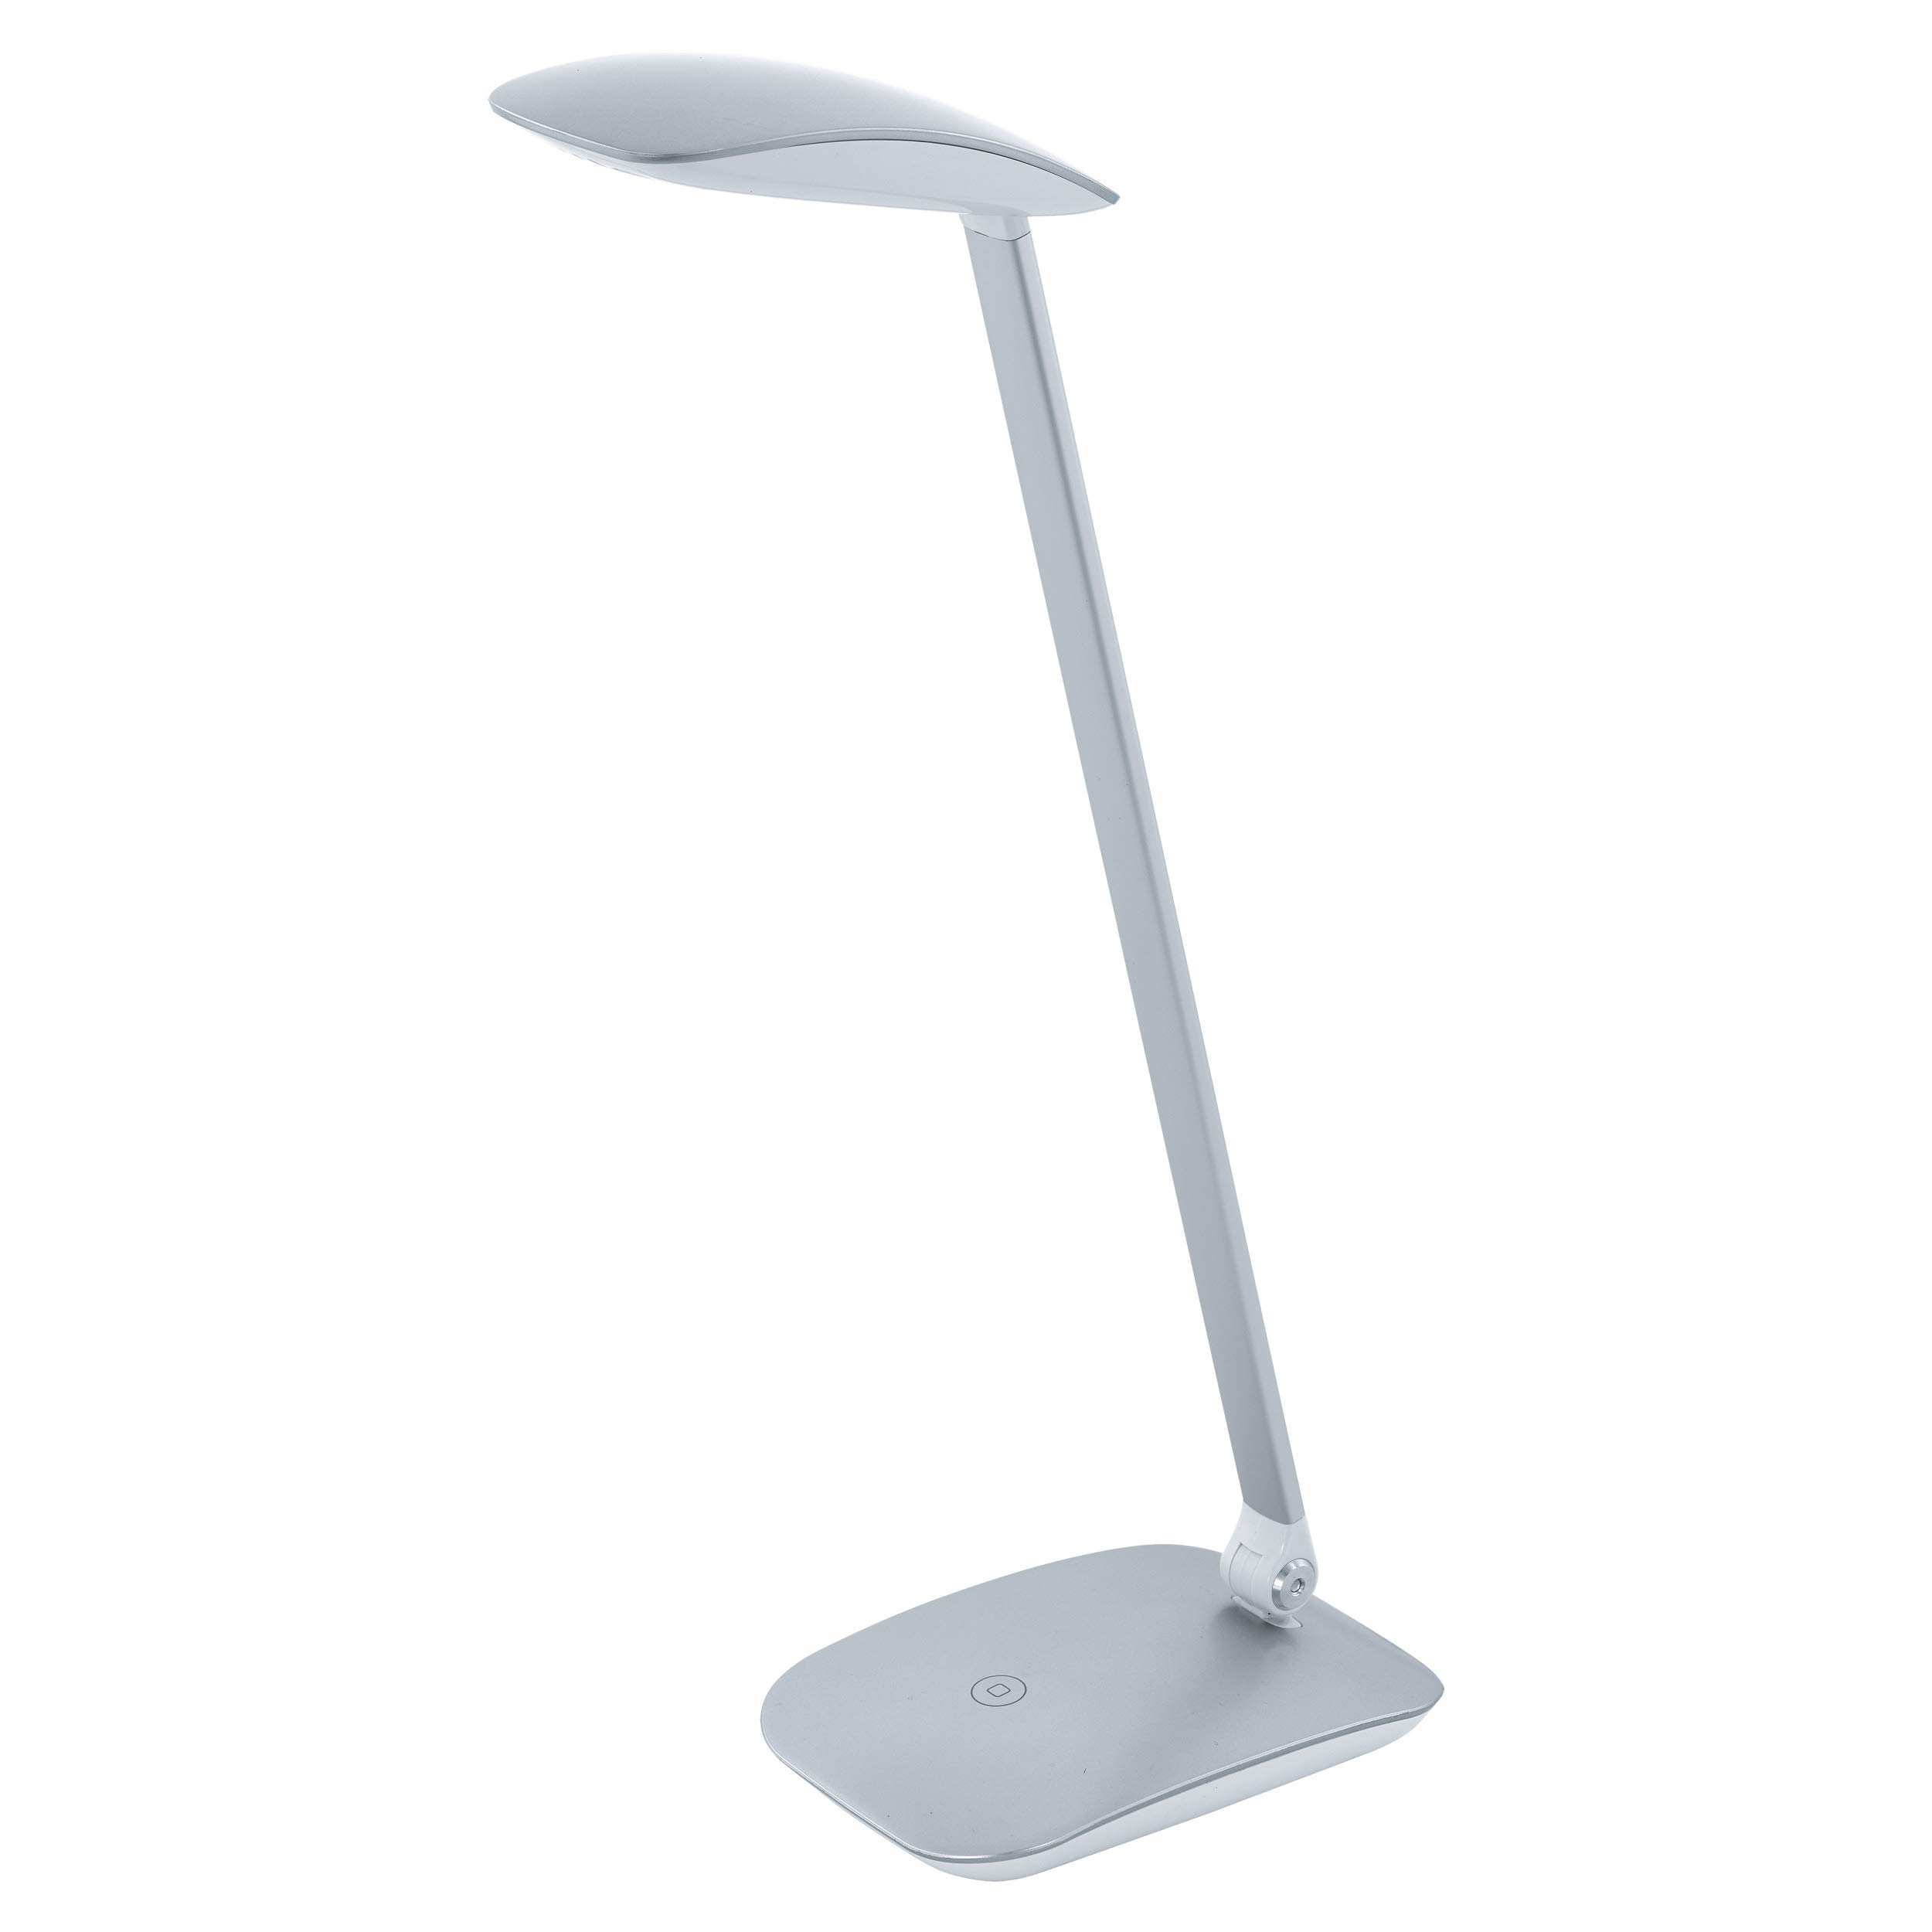 EGLO LED Tischlampe Cajero, 1 flammige Tischleuchte mit Touch, dimmbar, USB Lampe, Schreibtischlampe, Minimalismus aus hochwertigem Kunststoff, Bürolampe in Silber